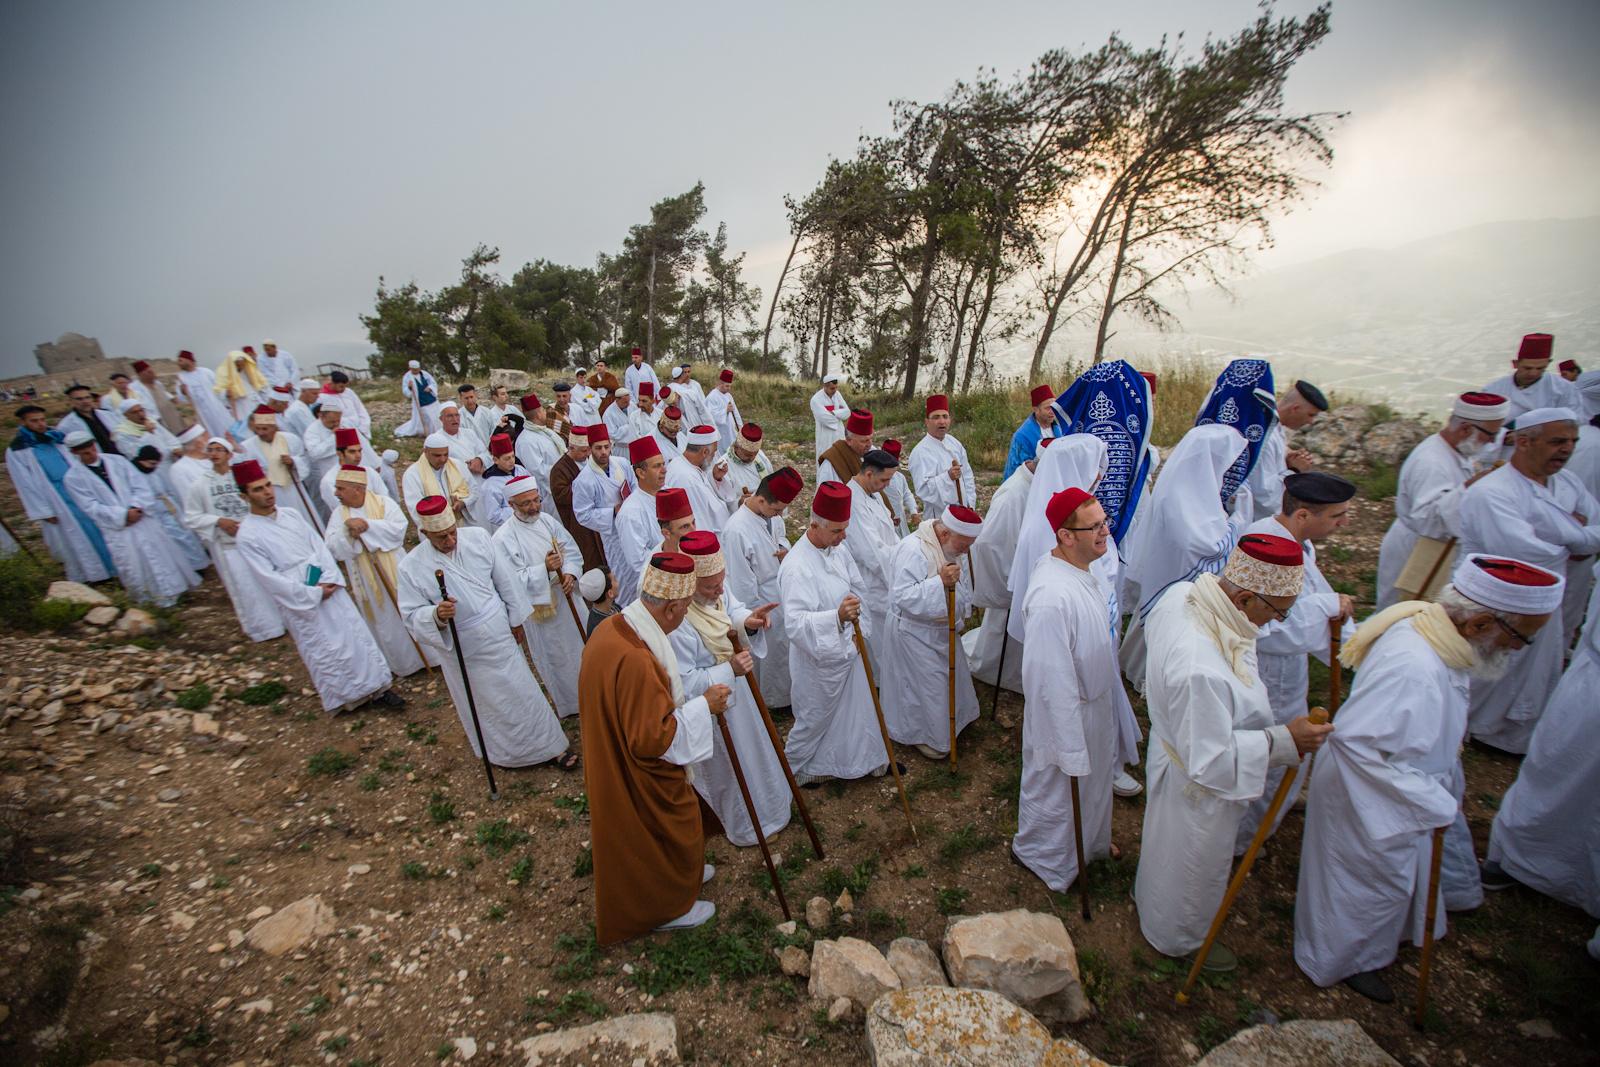 NABLUS, PALESTINIAN TERRITORIES - APRIL 27, 2016: Samaritans take part in a pilgrimage marking...